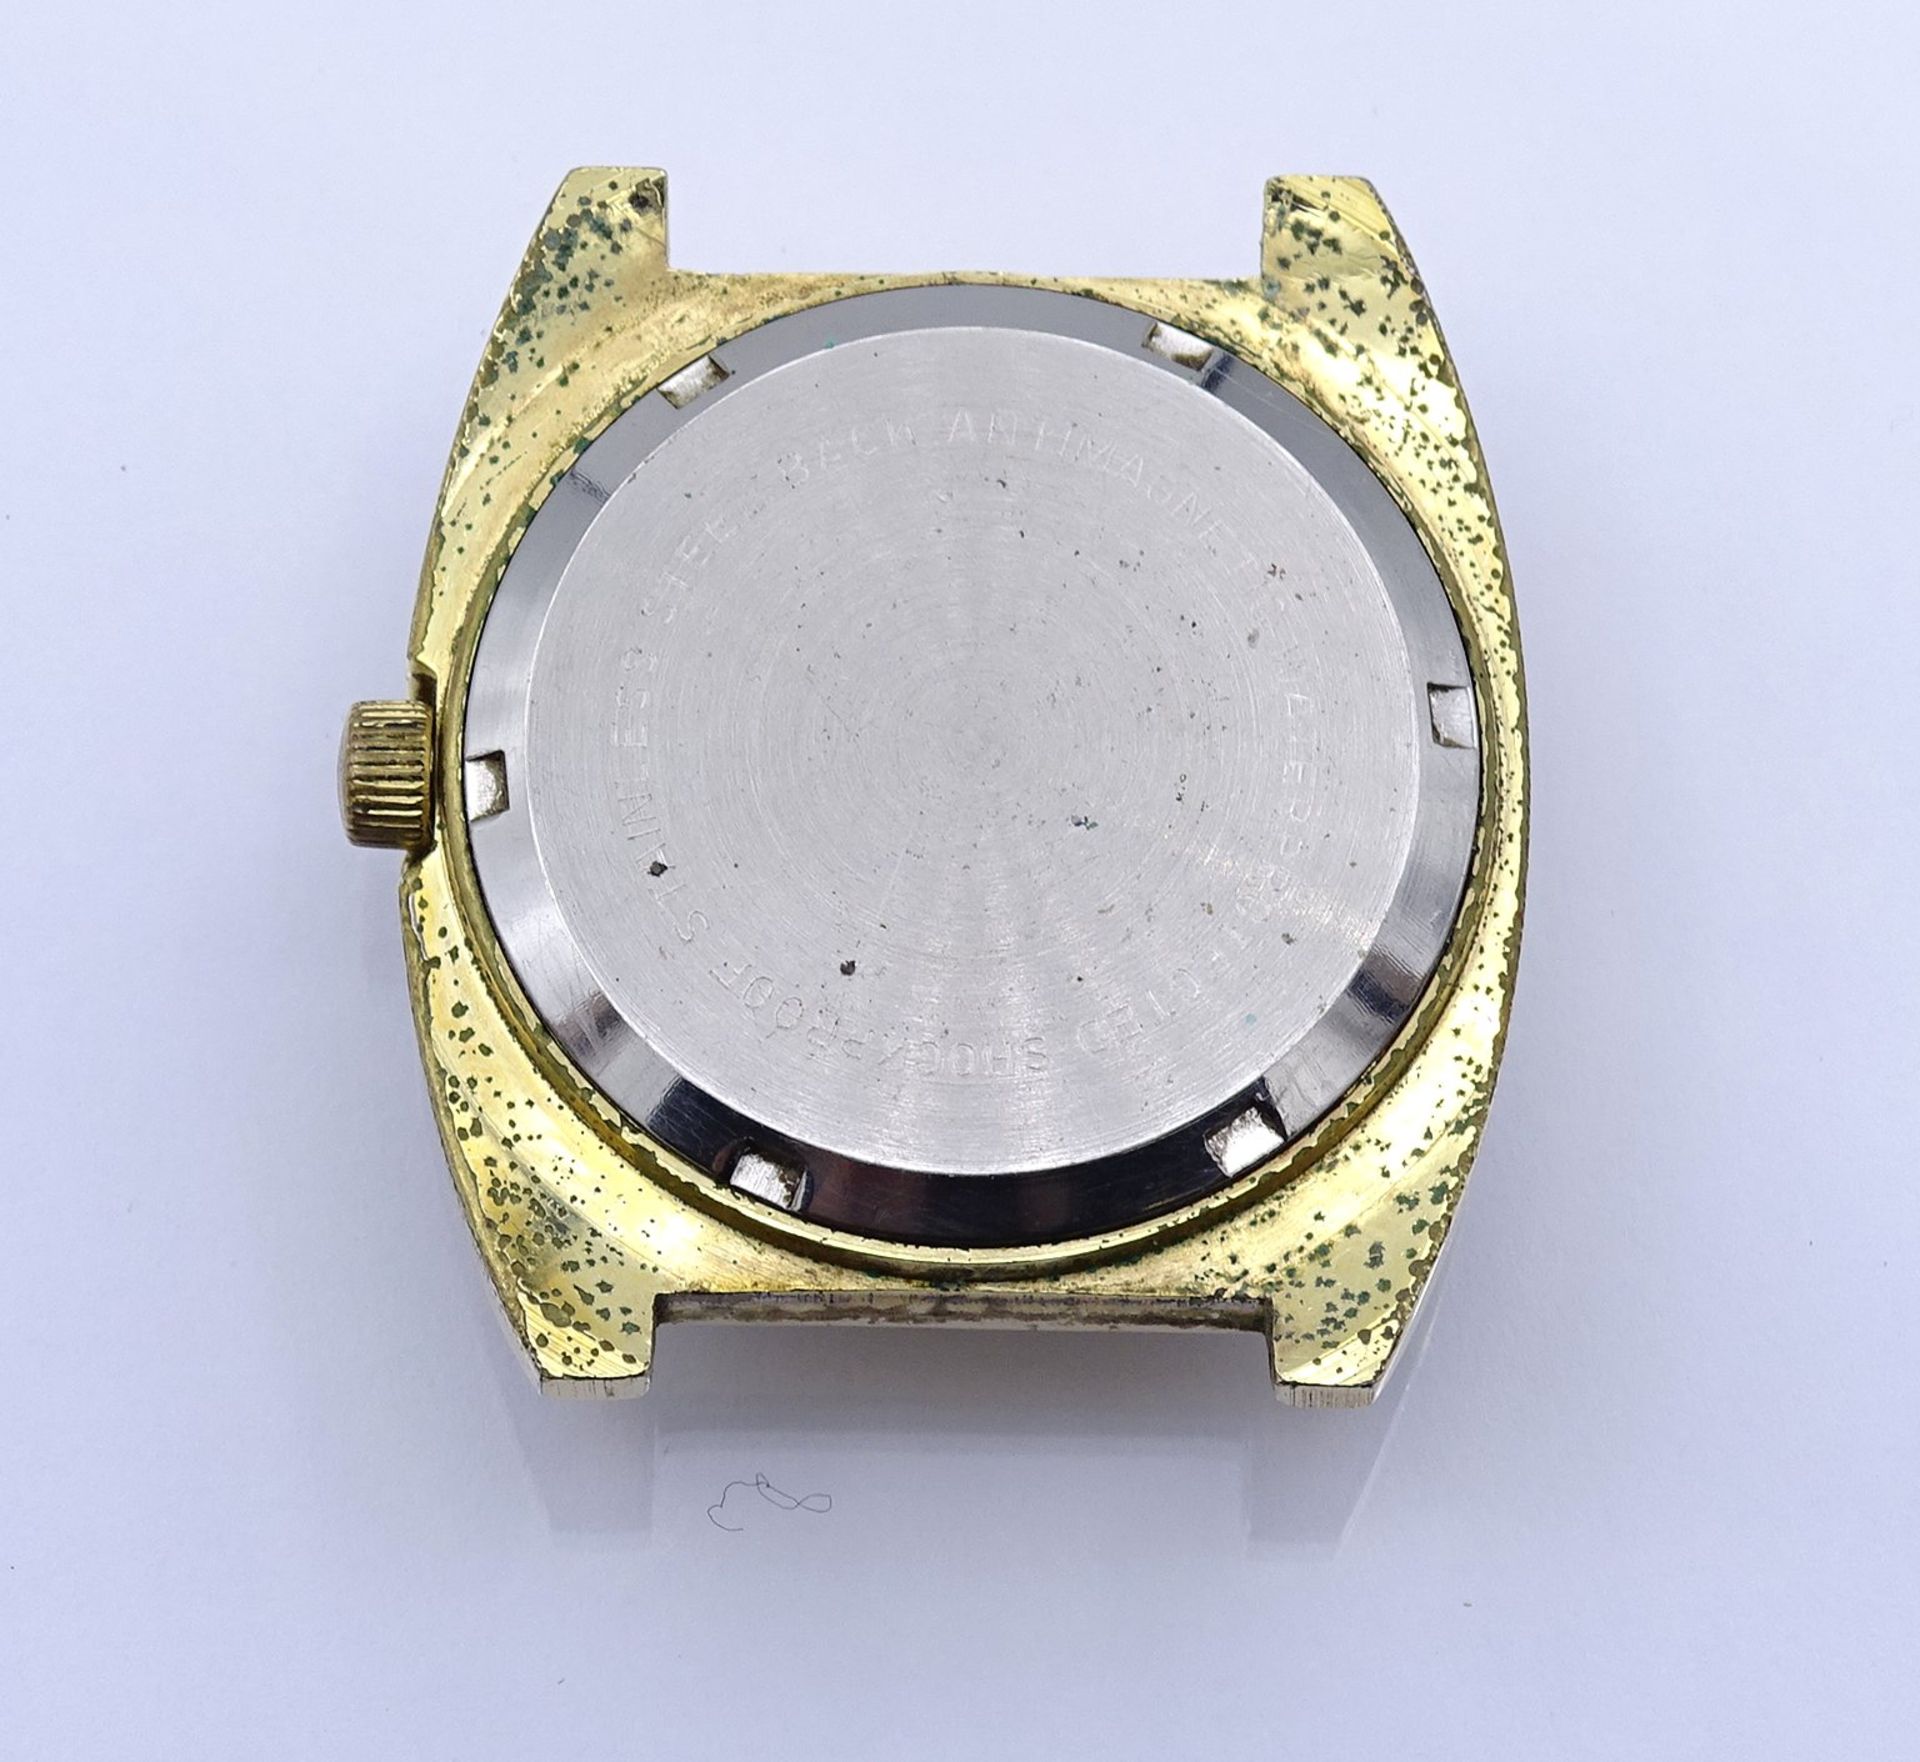 Armbanduhr "Osco" , mechanisch, Werk läuft, 33x35mm, ohne Band, Alters- und Gebrauchsspuren - Image 2 of 2